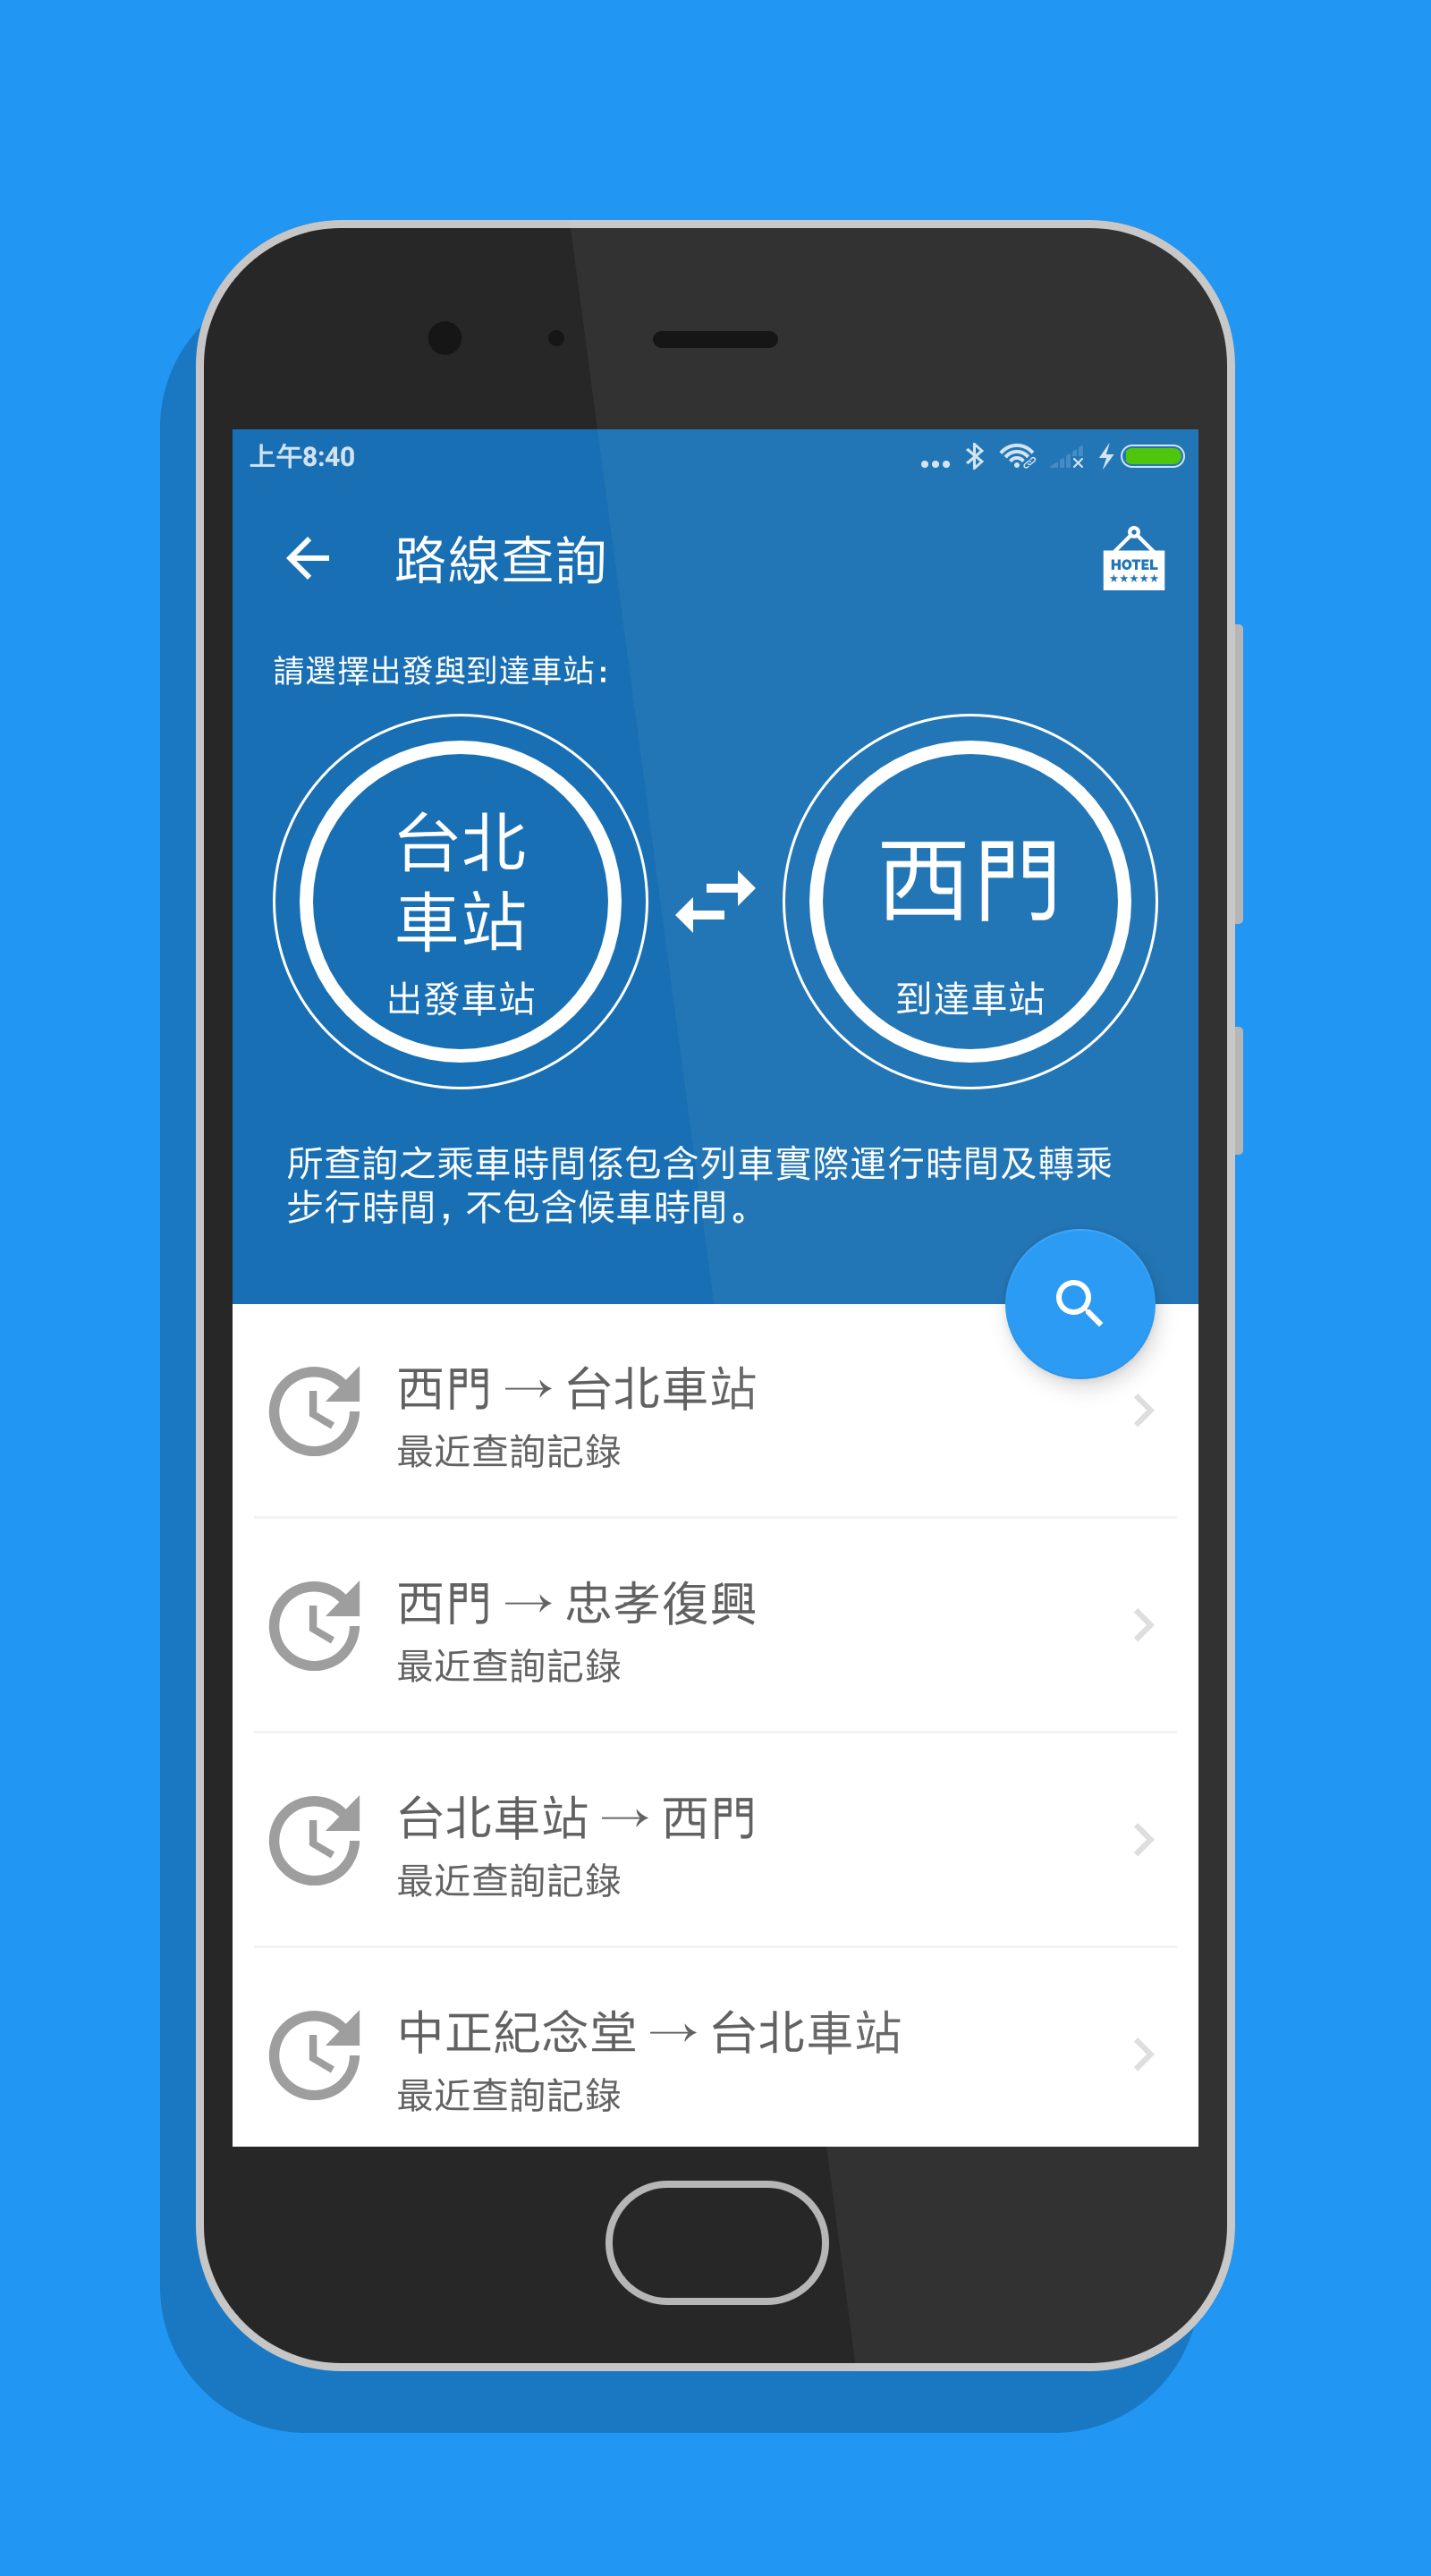 Android application 台北搭捷運 - 轉乘路線快速查詢(支援桃園機場捷運/淡海輕軌) screenshort